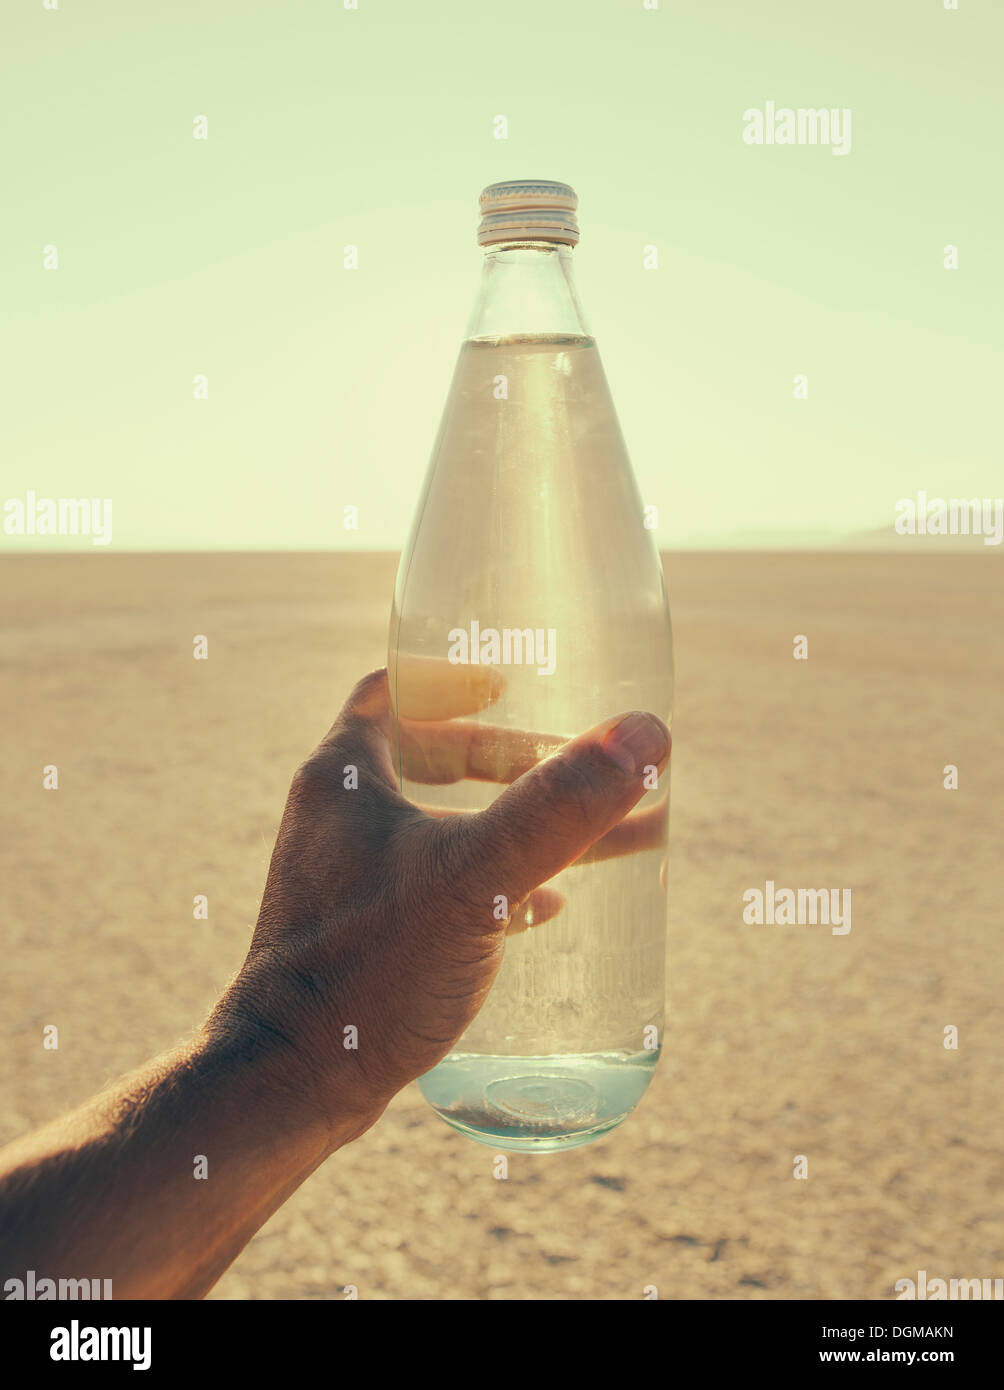 Die Landschaft der Black Rock Desert in Nevada. Die Hand eines Mannes mit einer Flasche Wasser. Gefilterte Mineralwasser. Stockfoto